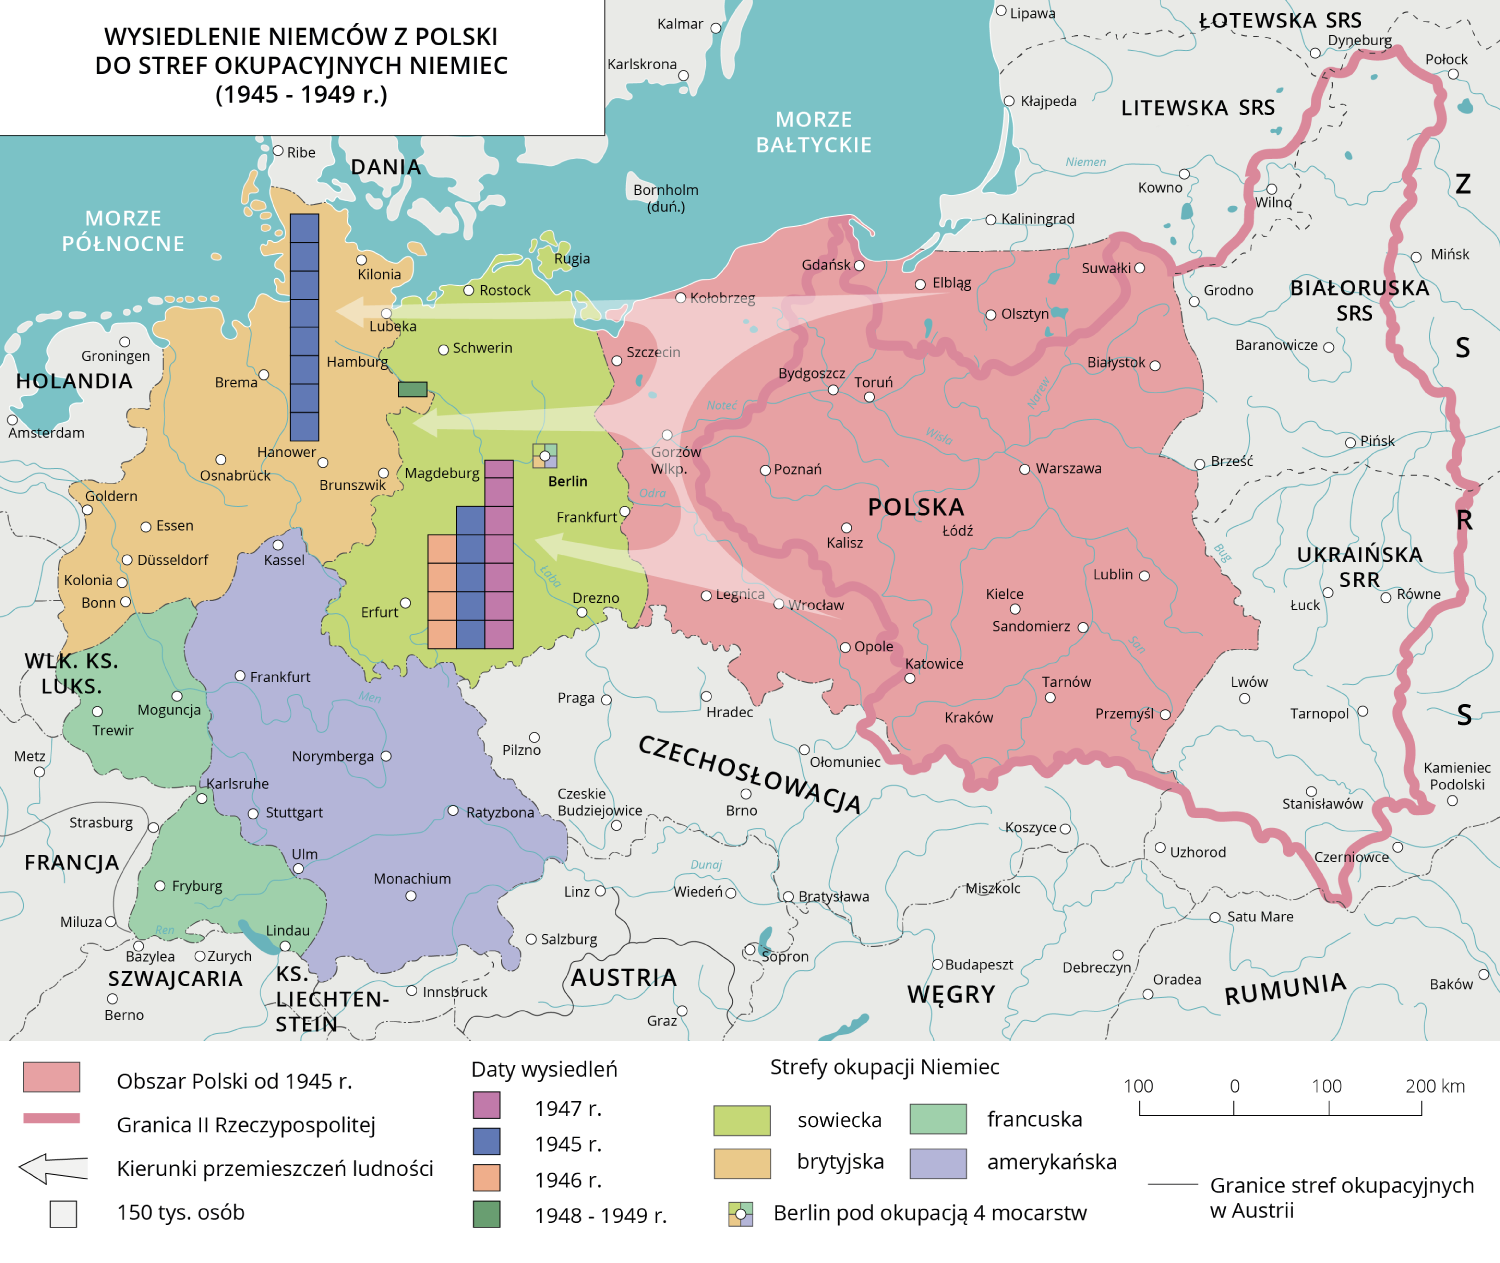 Ilustracja przedstawia mapę Europy z lat 1945-1949 z oznaczonymi państwami: Niemcy, Polska, Czechosłowacja, Austria, Węgry, Rumunia, ZSRR. W obszarze Niemiec widać podział na trzy strefy.